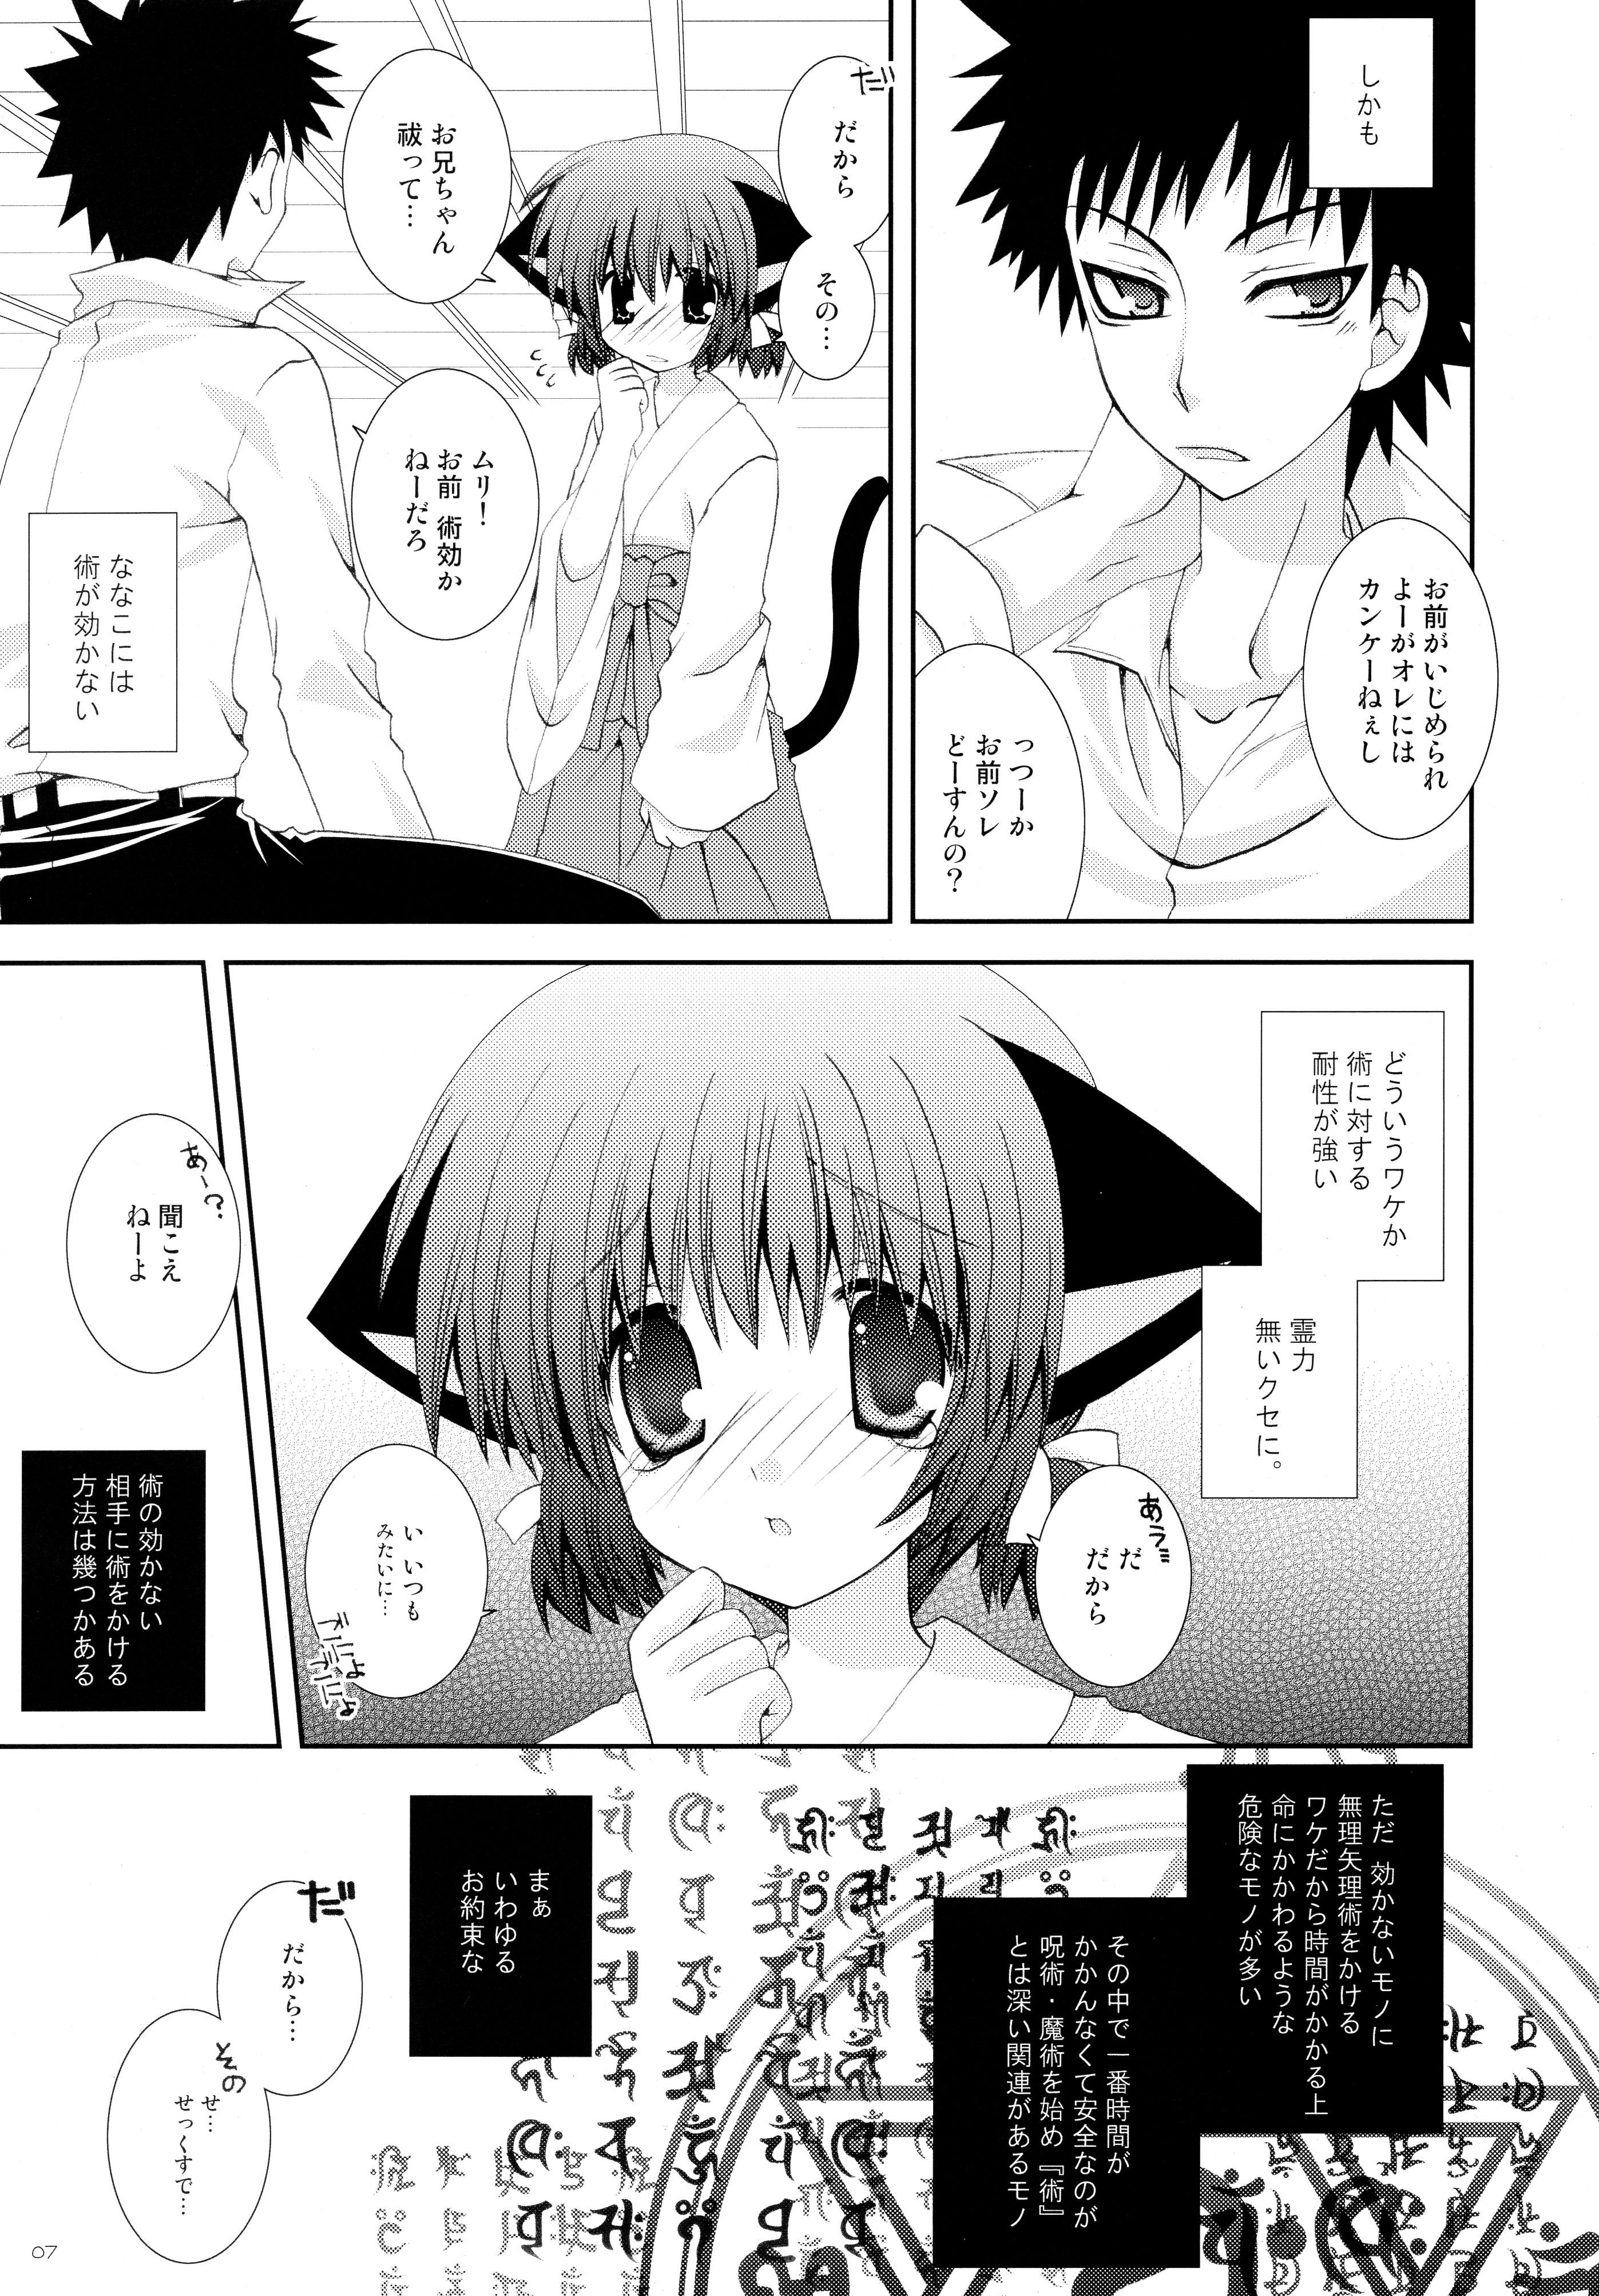 Licking Imouto wa MikoMiko Nyanko Jerking - Page 7